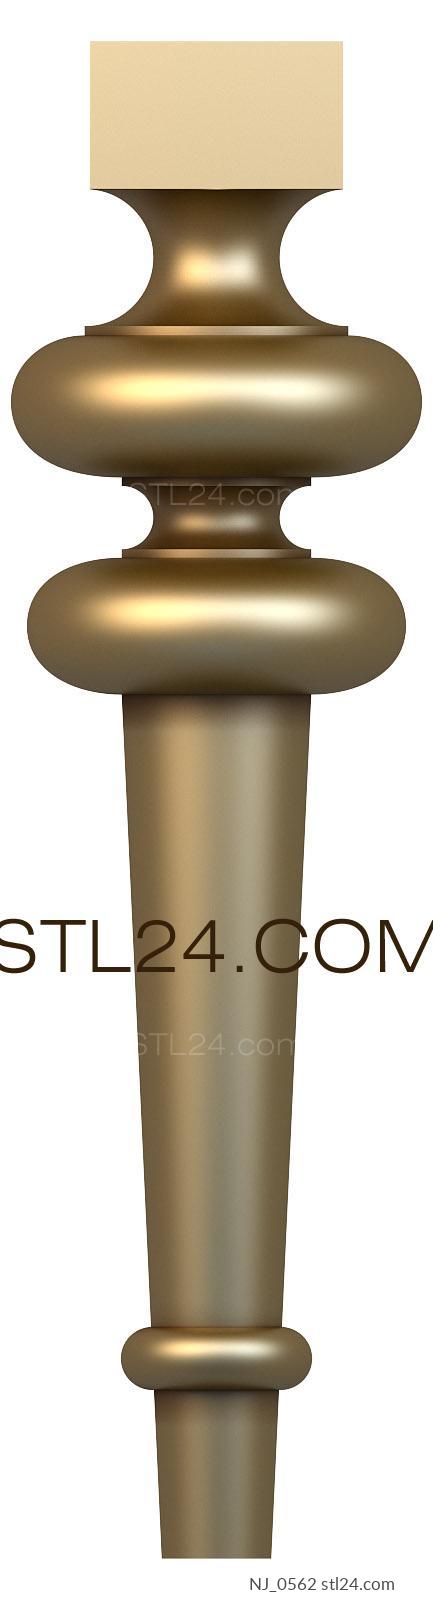 Ножки (NJ_0562) 3D модель для ЧПУ станка